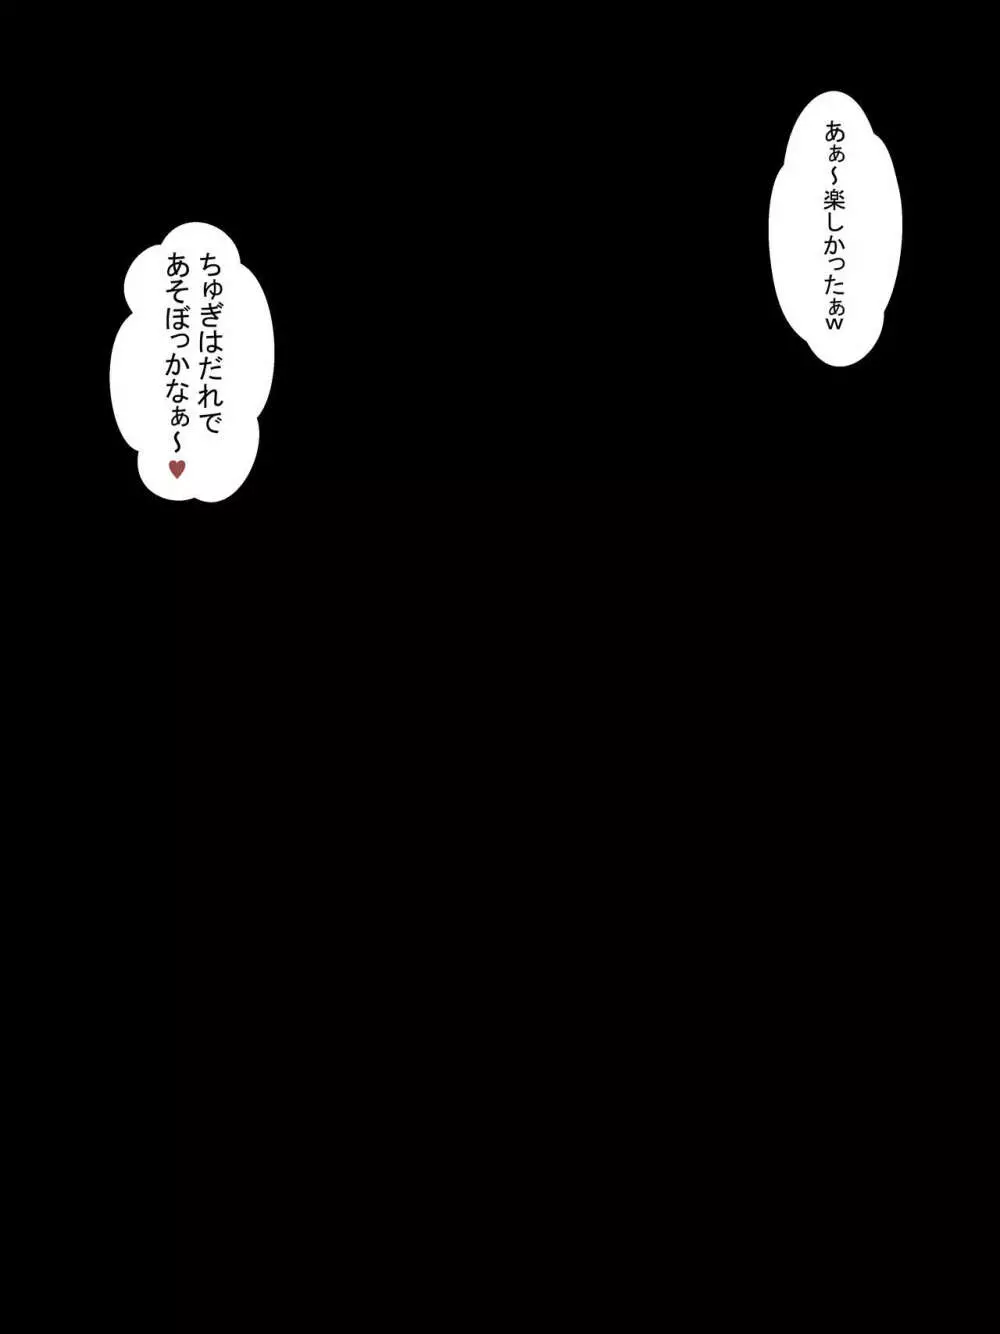 キモオタ異世界転移で☆5美少女の卵子台無し計画 179ページ